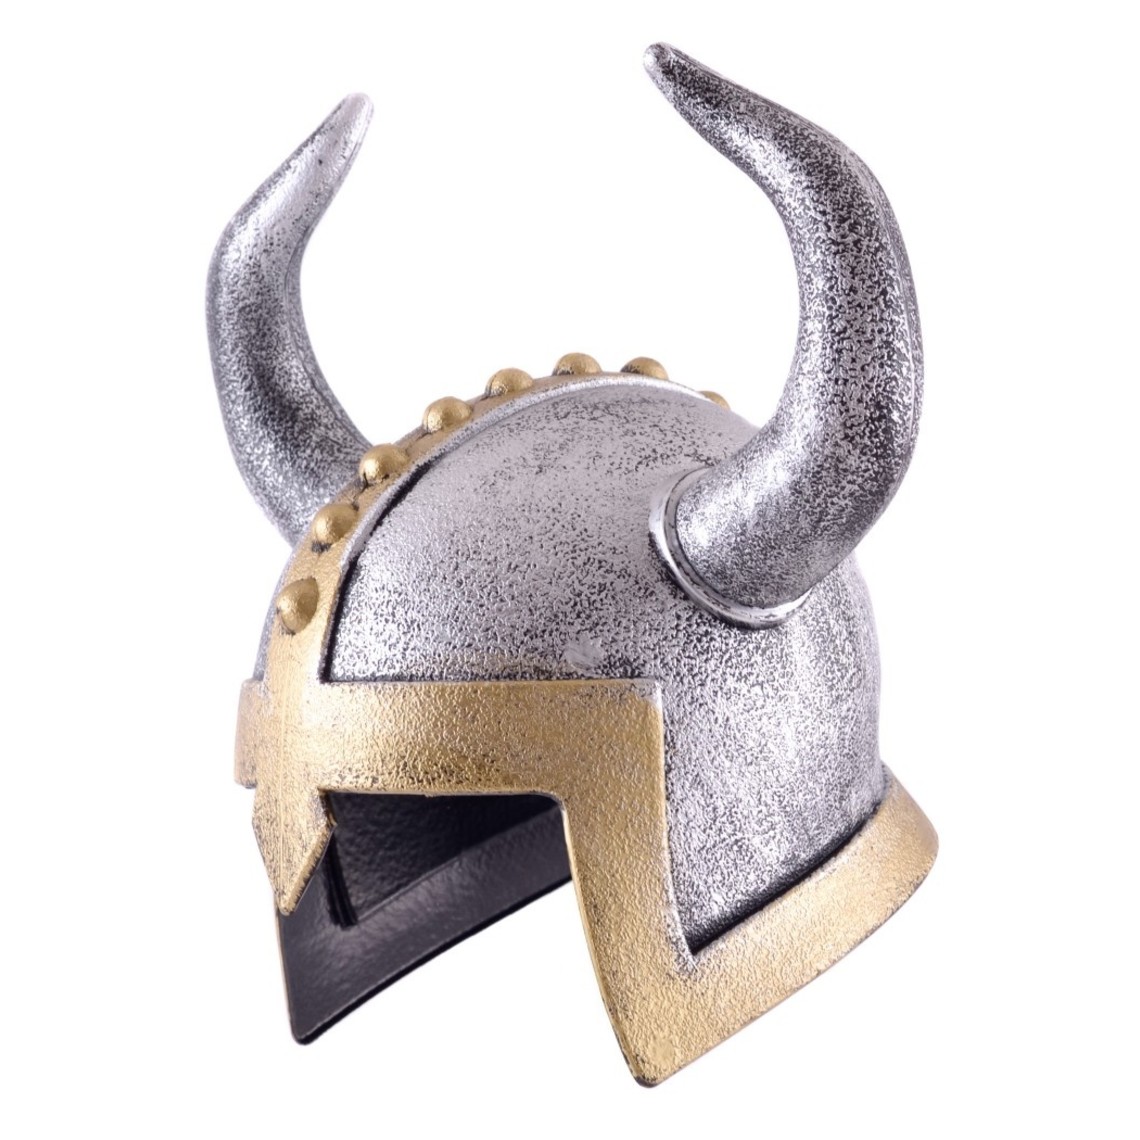 horned-viking-helmet-for-kids.jpg